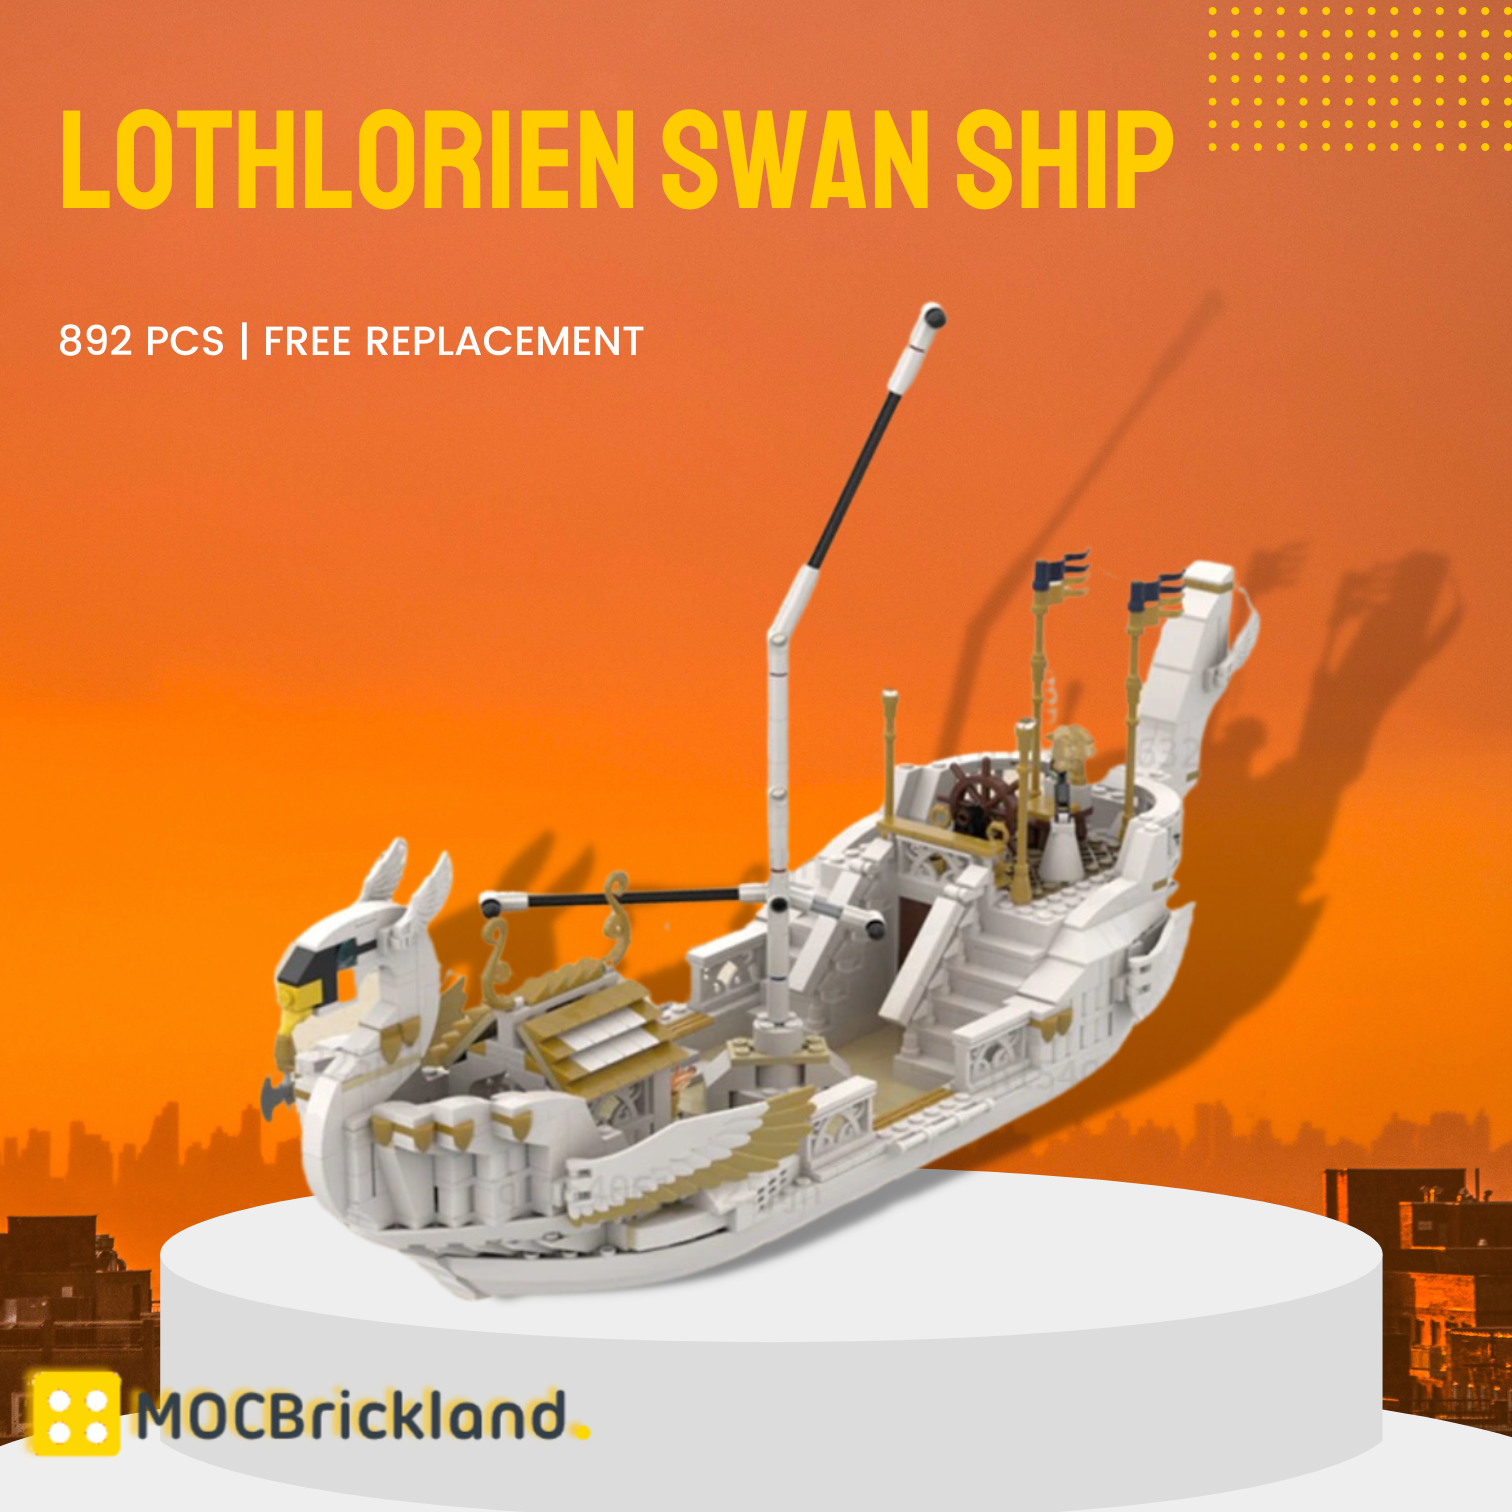 Lothlorien Swan Ship MOC 125575 1